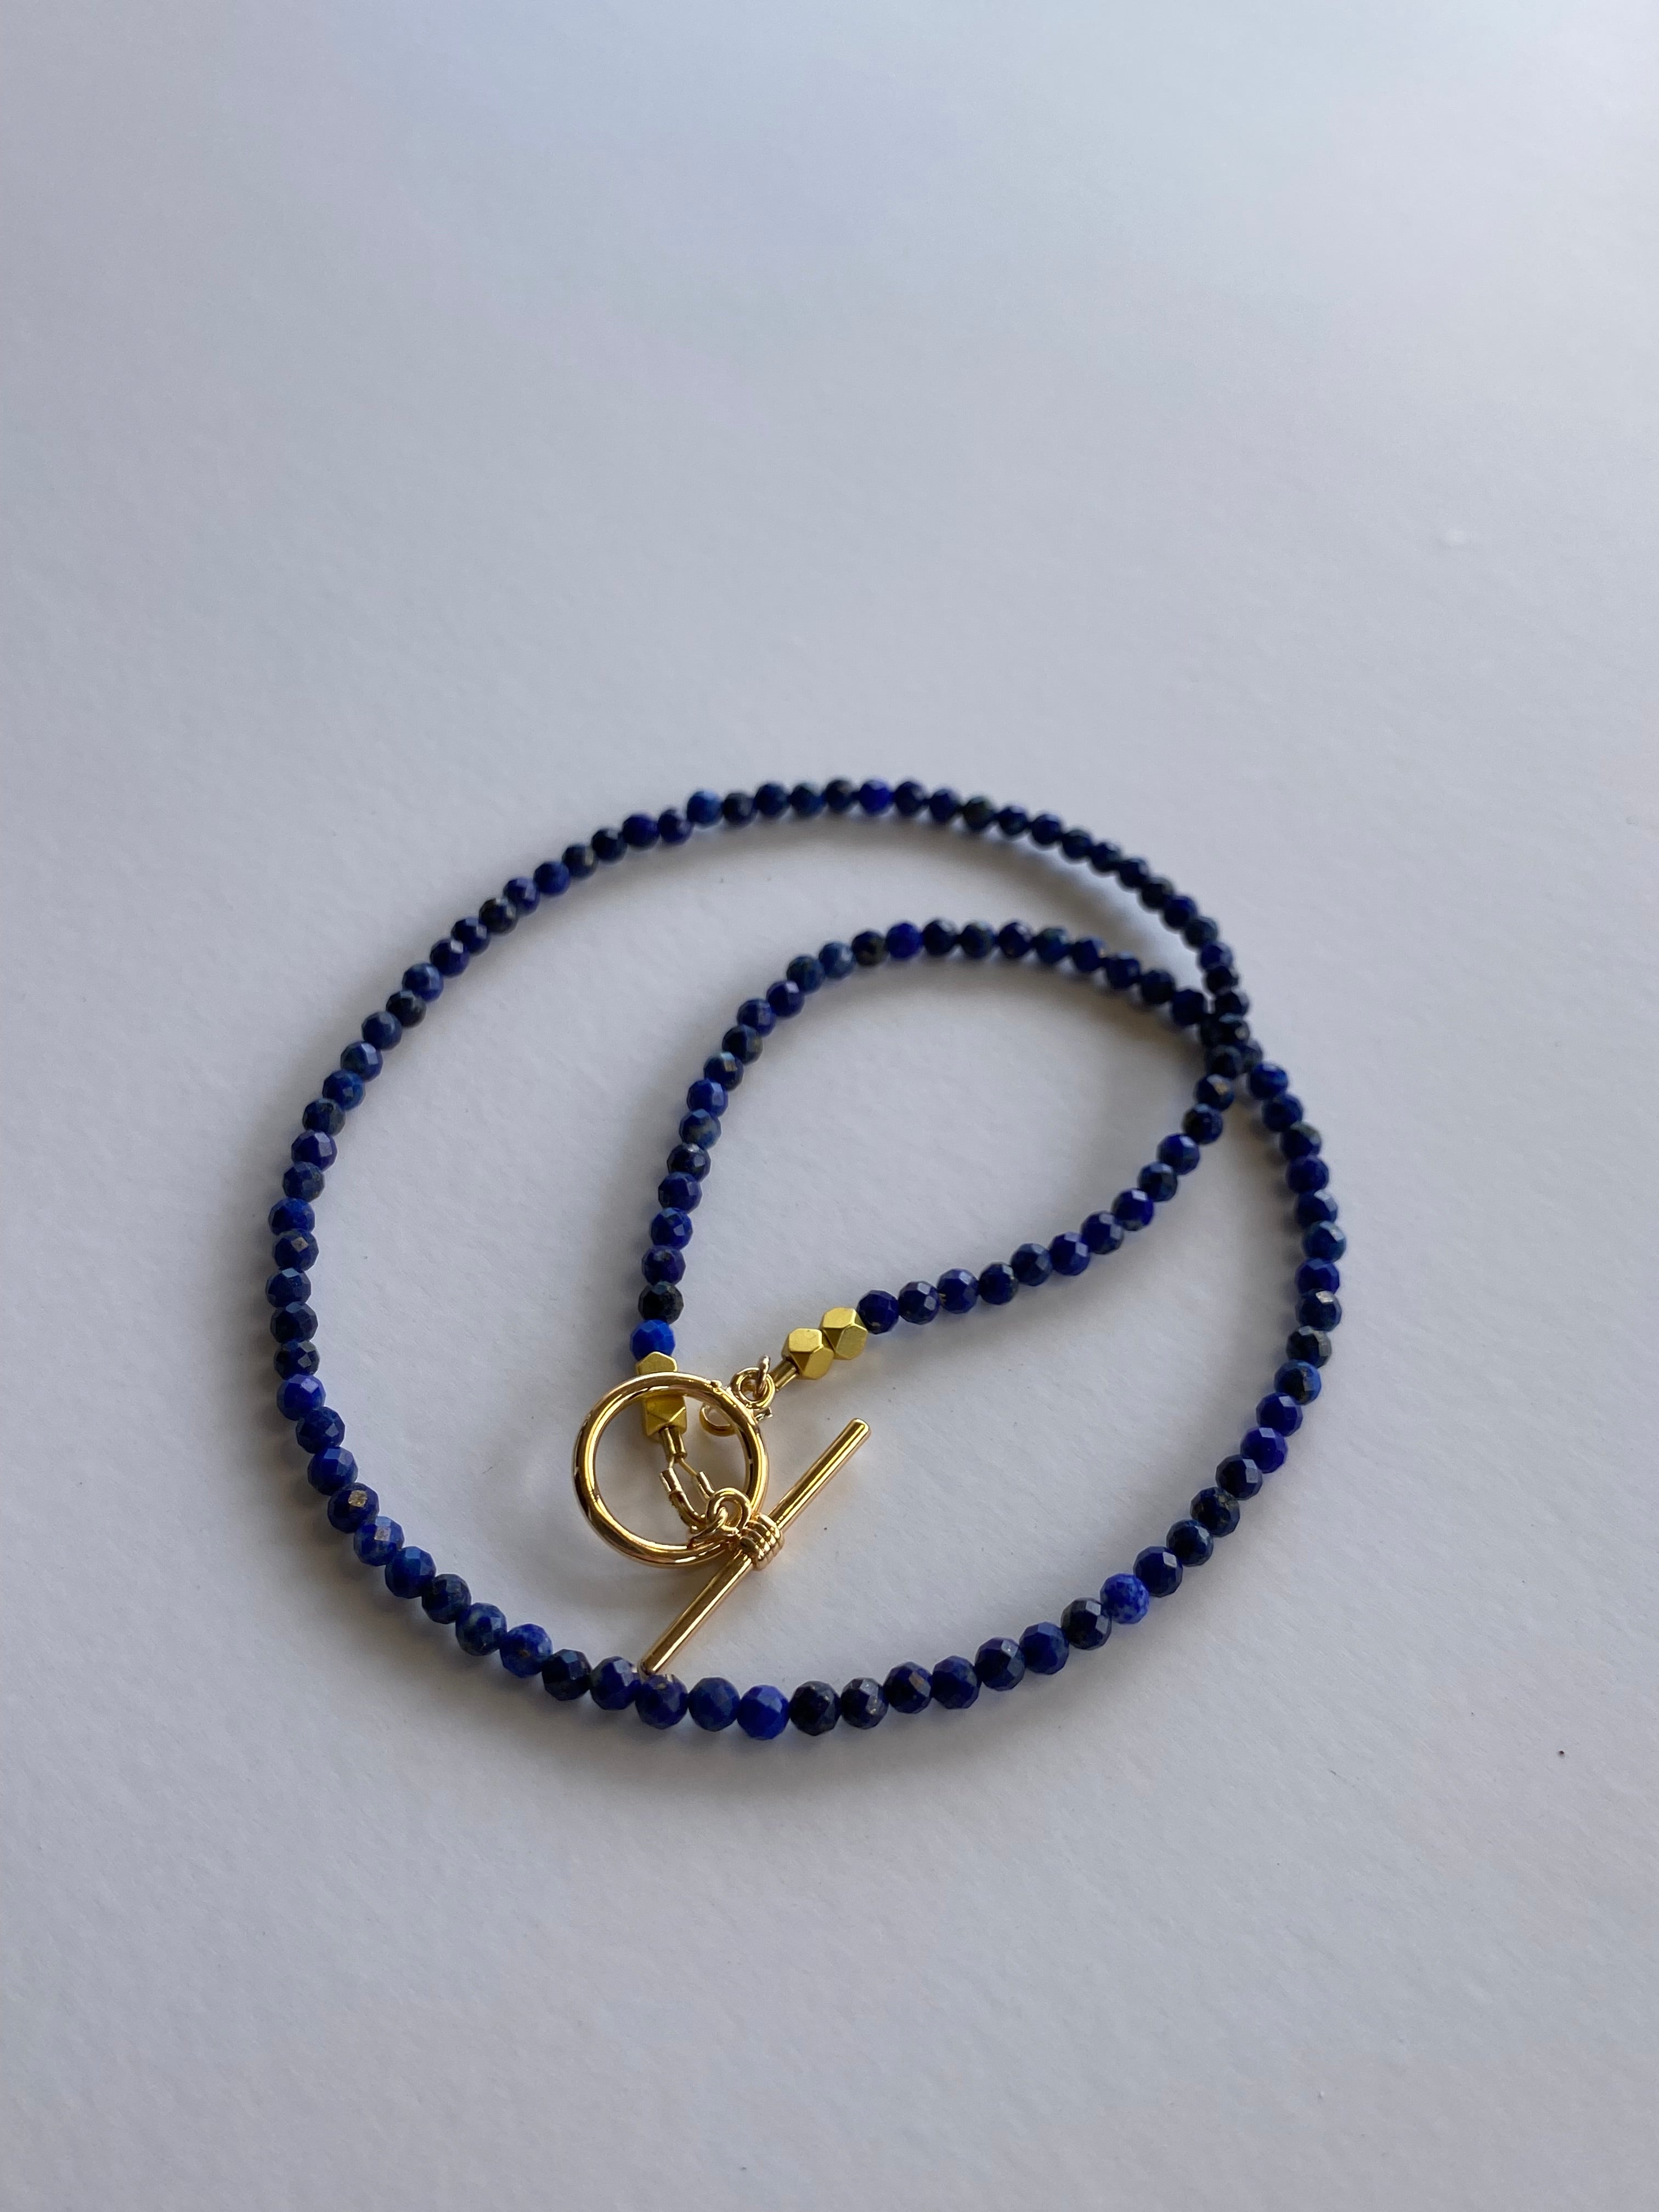 Lapis Lazuli Gemstone necklace